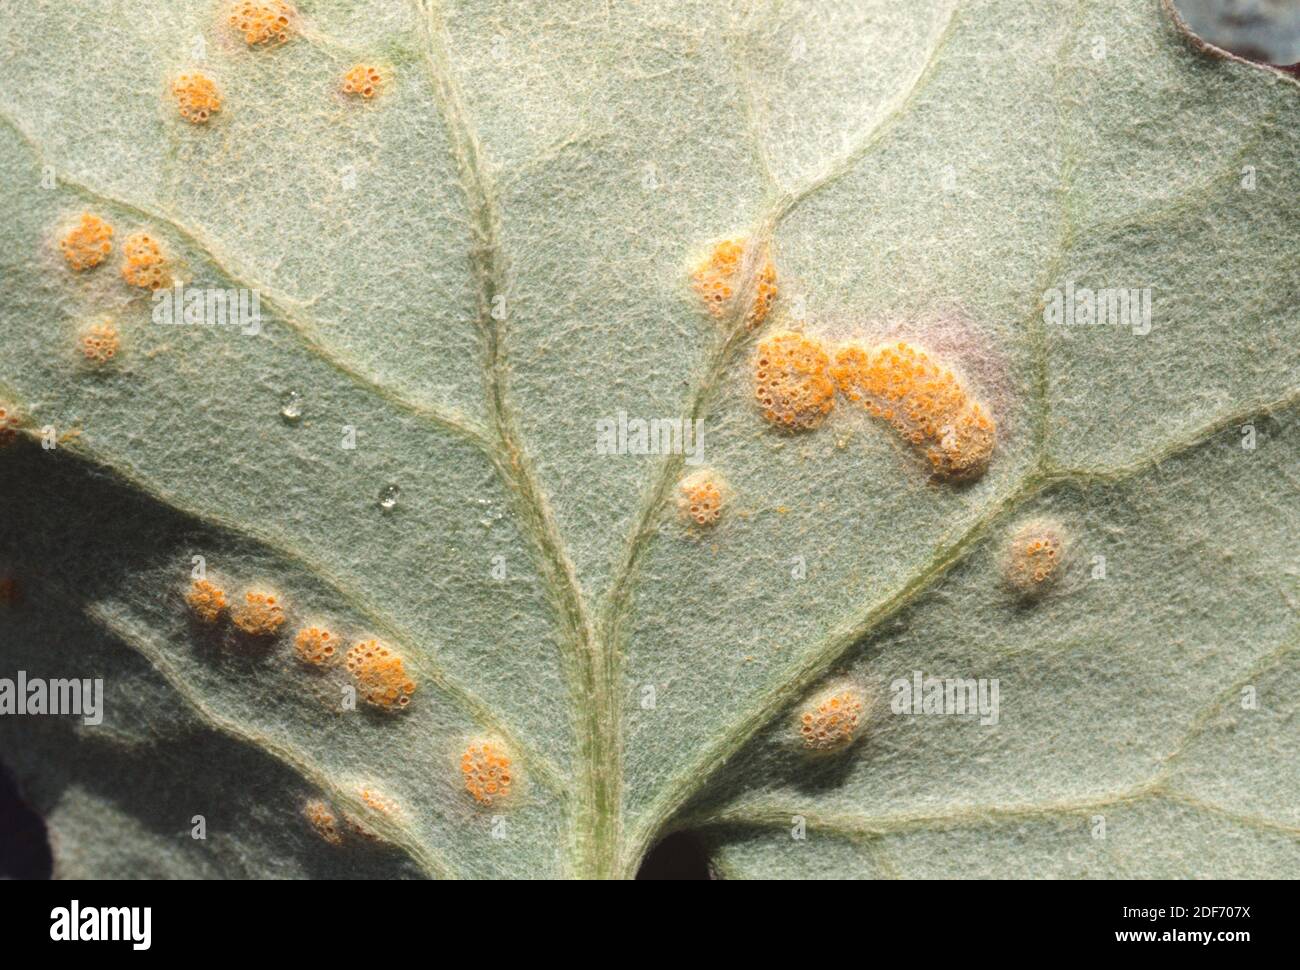 Coltsfoot Rost Call (Puccinia poarum) ist ein Parasiten Pilz. In diesem Beispiel Parasiten Tussilago fara Blatt. Dieses Foto wurde in Montseny aufgenommen Stockfoto